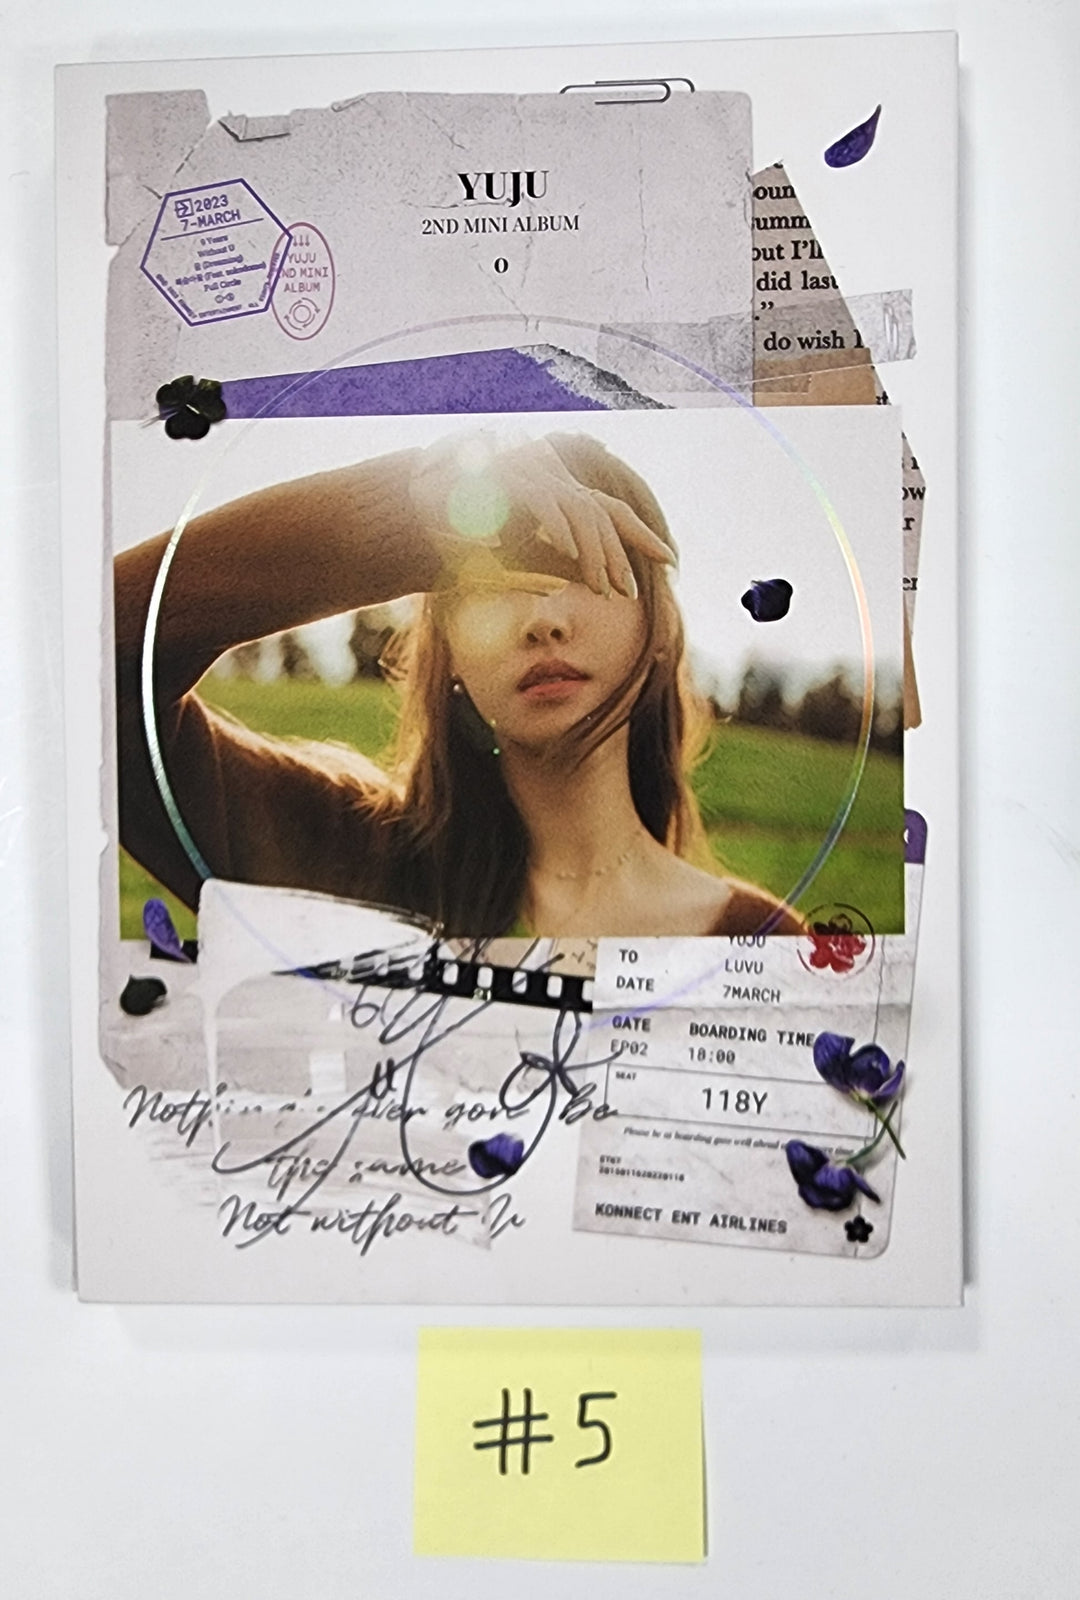 YUJU (Of GFRIEND) "O" - Hand Autographed(Signed) Pormo Album